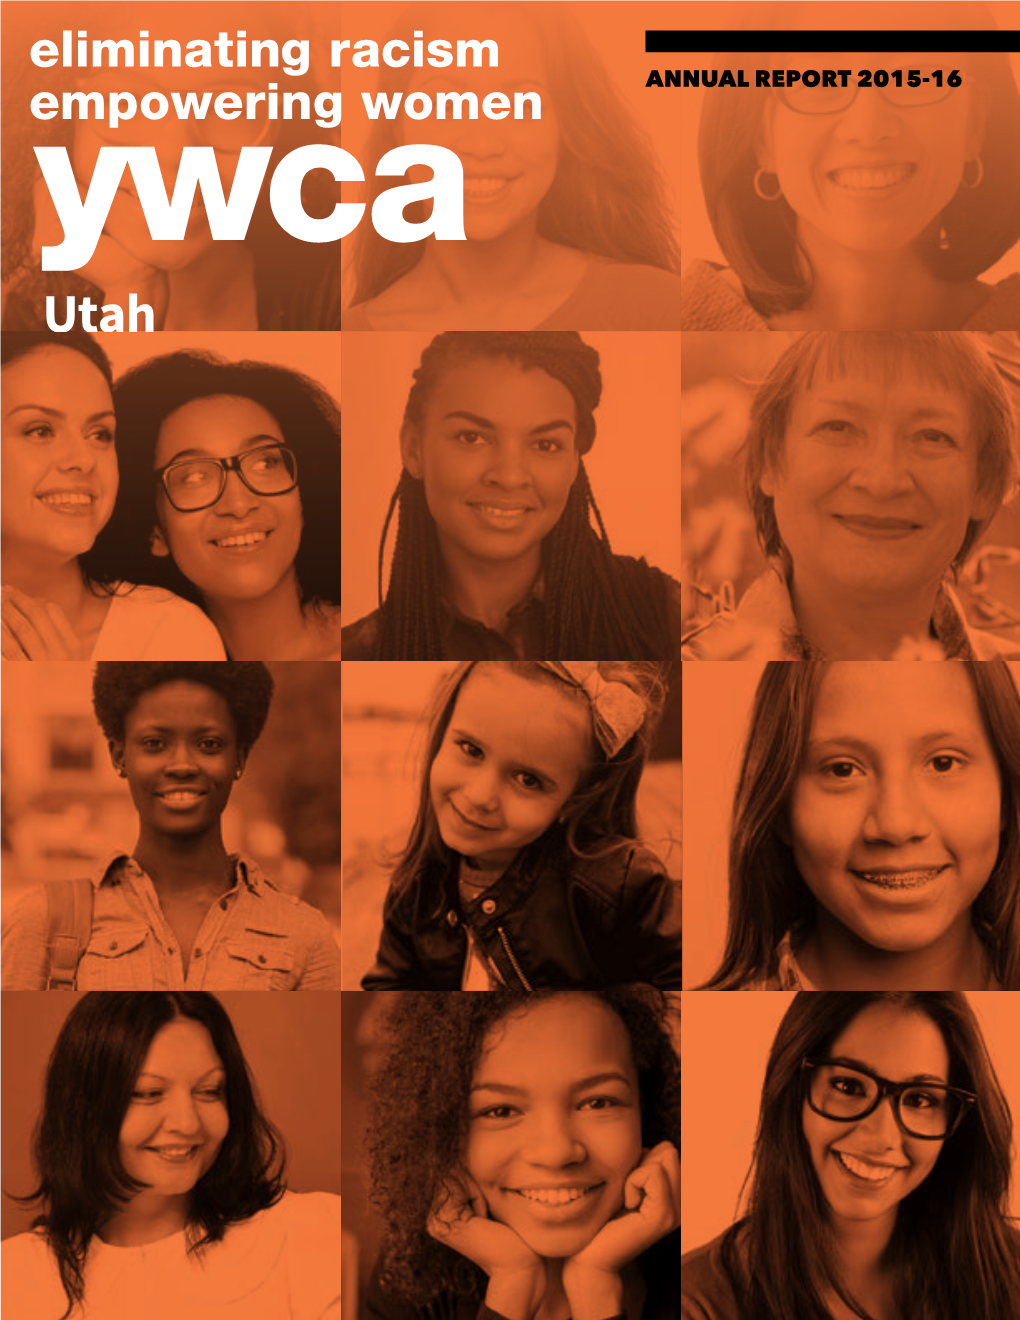 Annual Report 2015-16 Ywca Utah Leadership 2015-2016